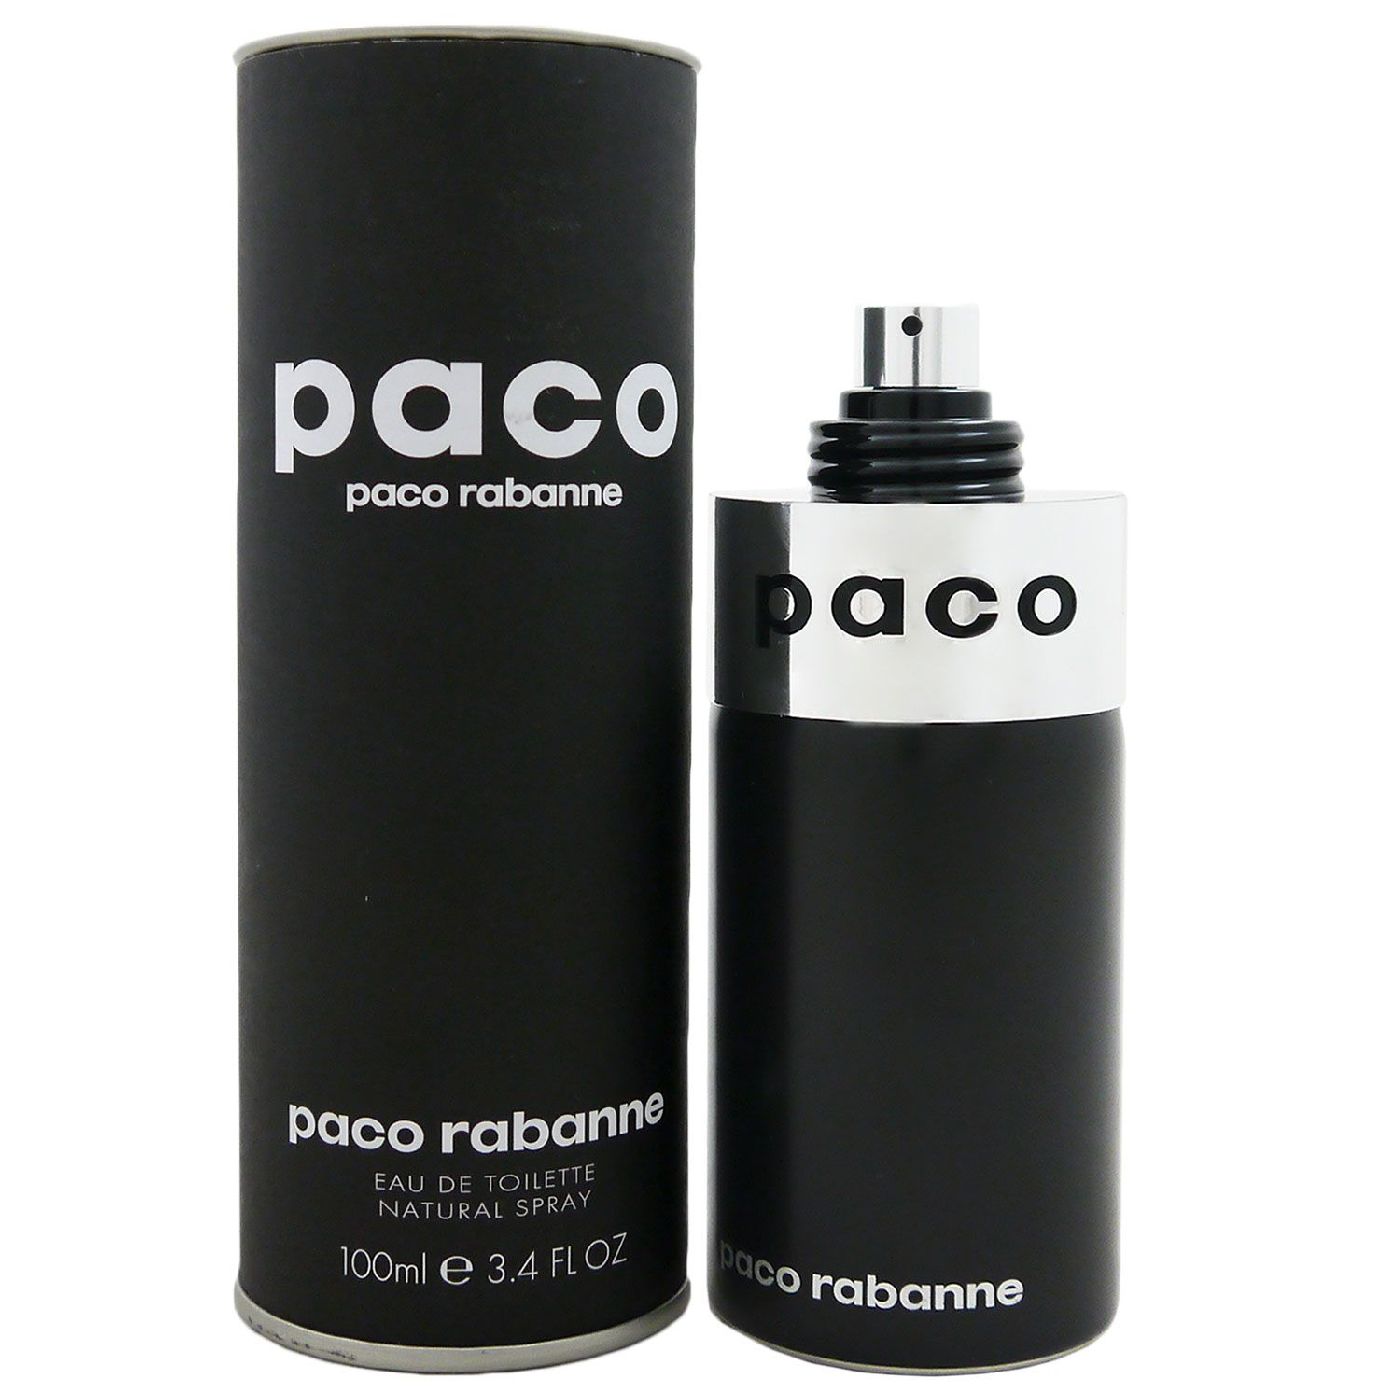 Paco Paco 100 ml Eau de Toilette bei Riemax